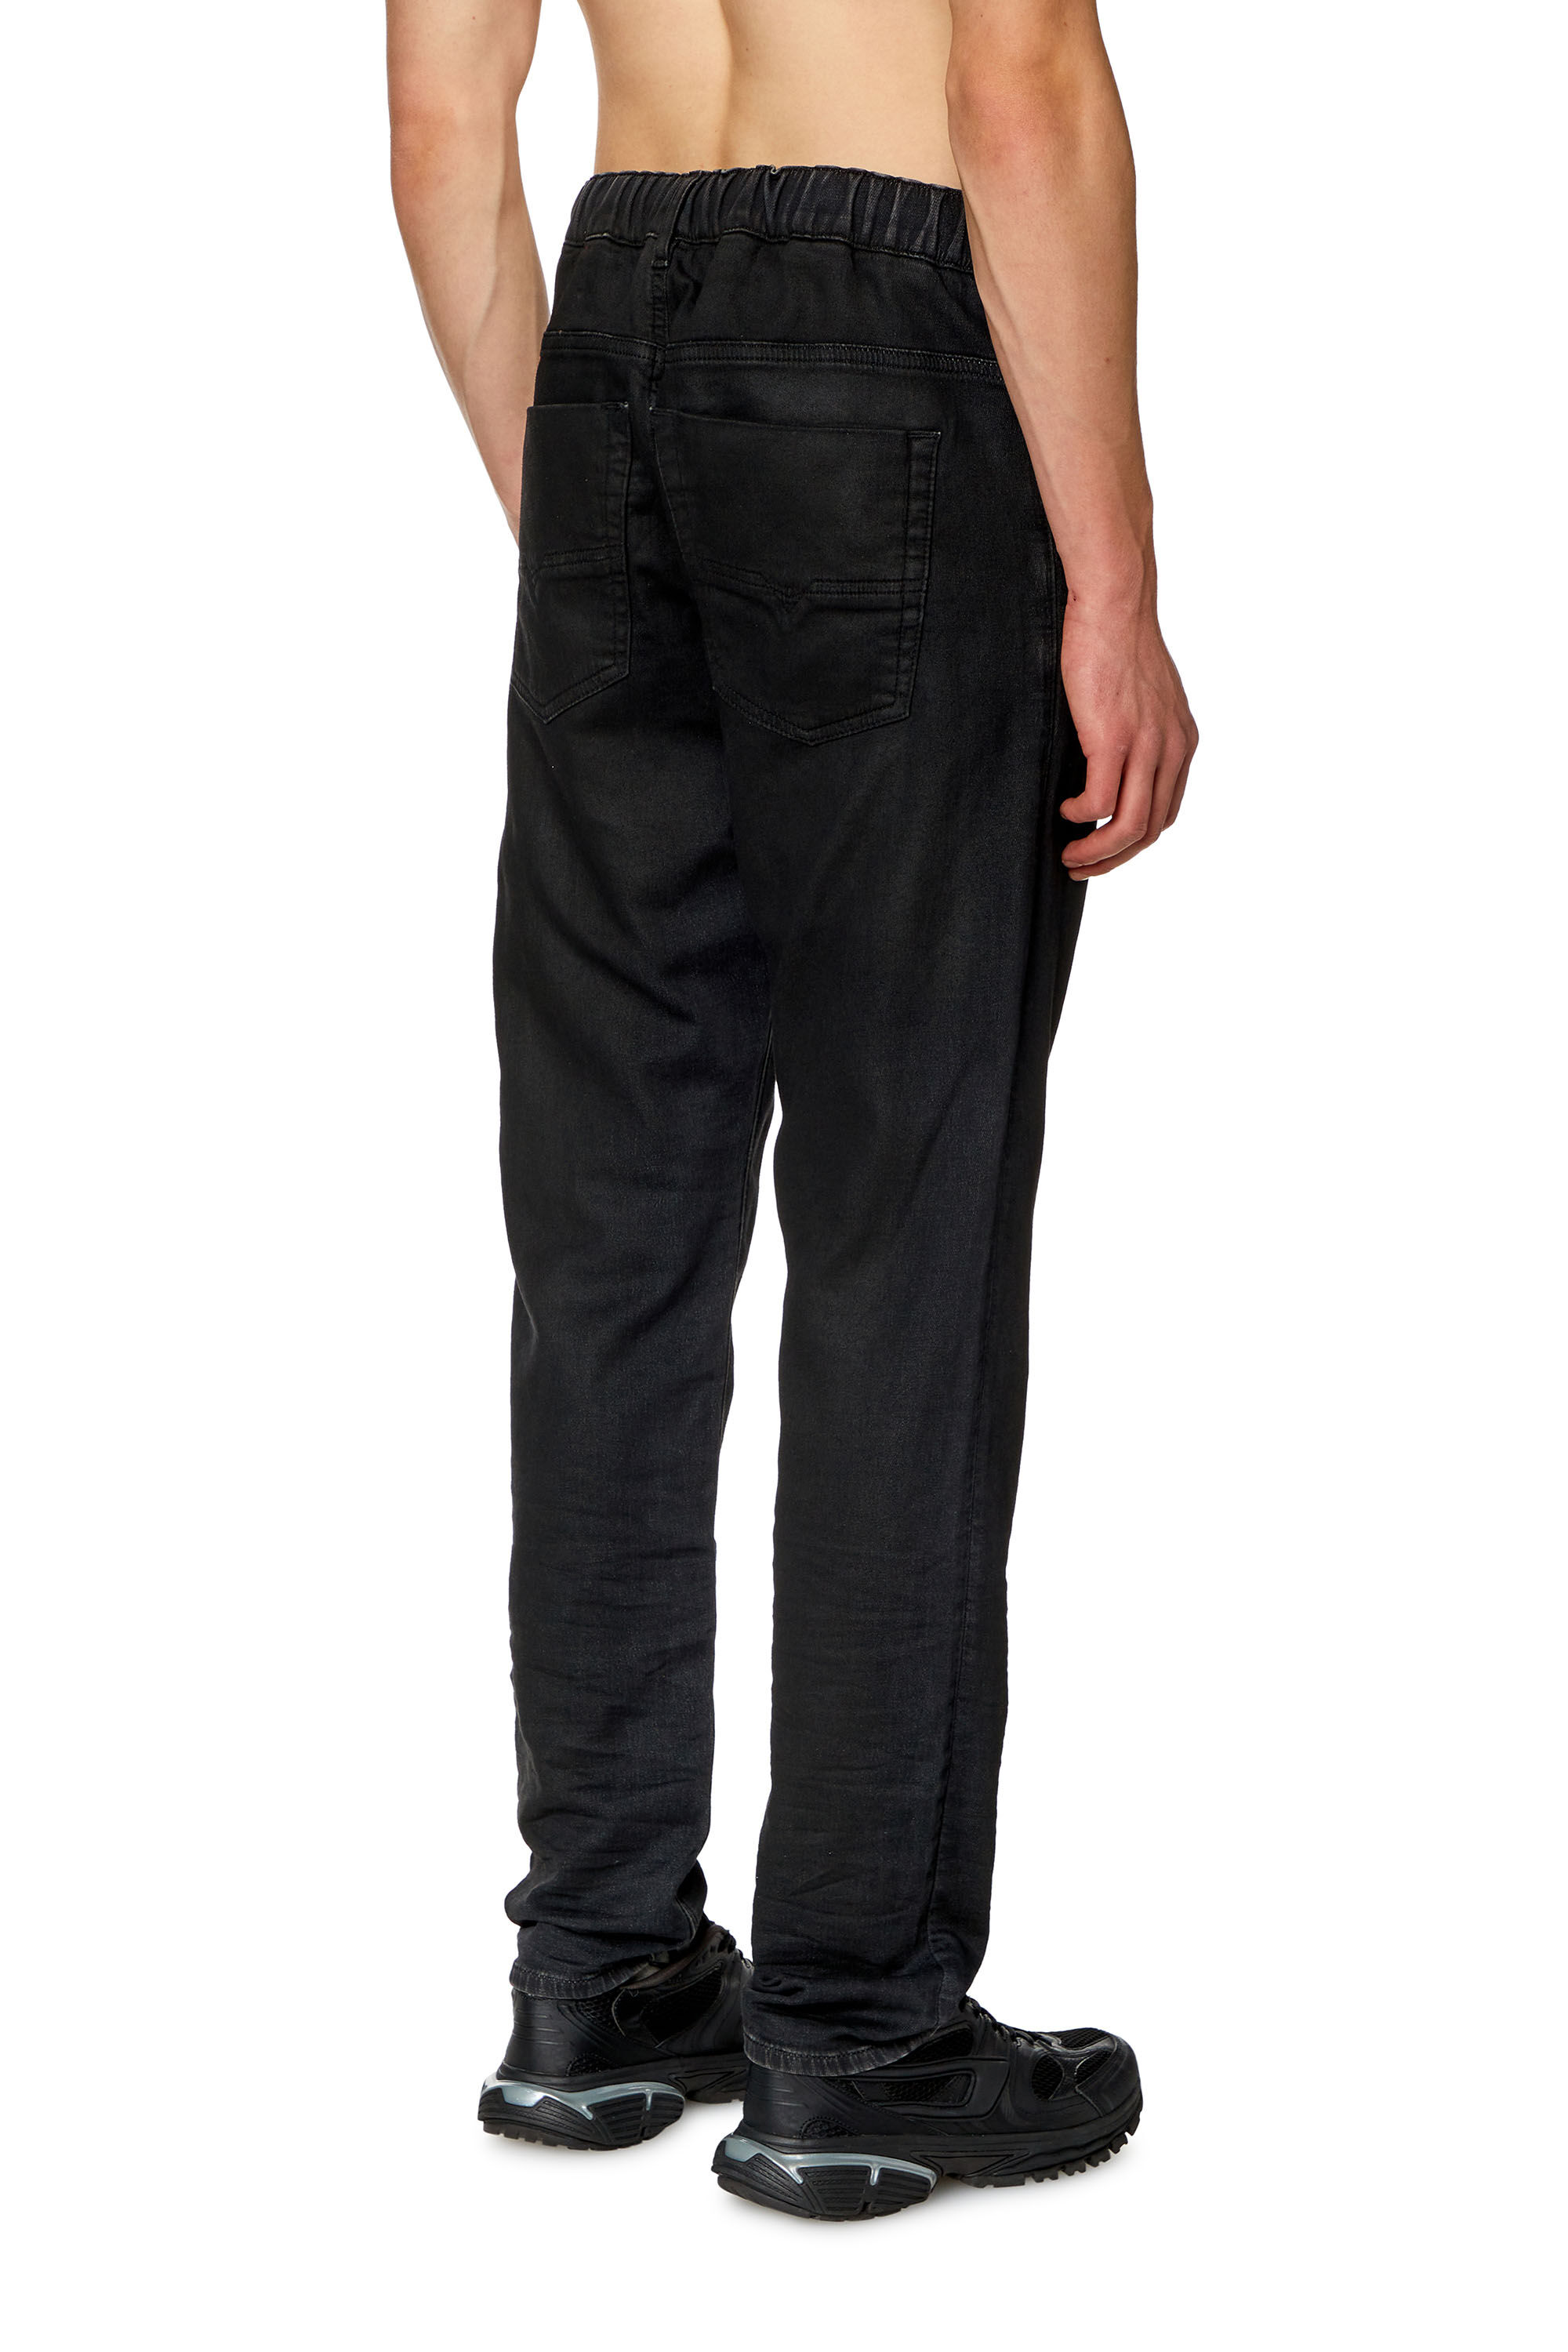 Men's Tapered Jeans, Black/Dark grey